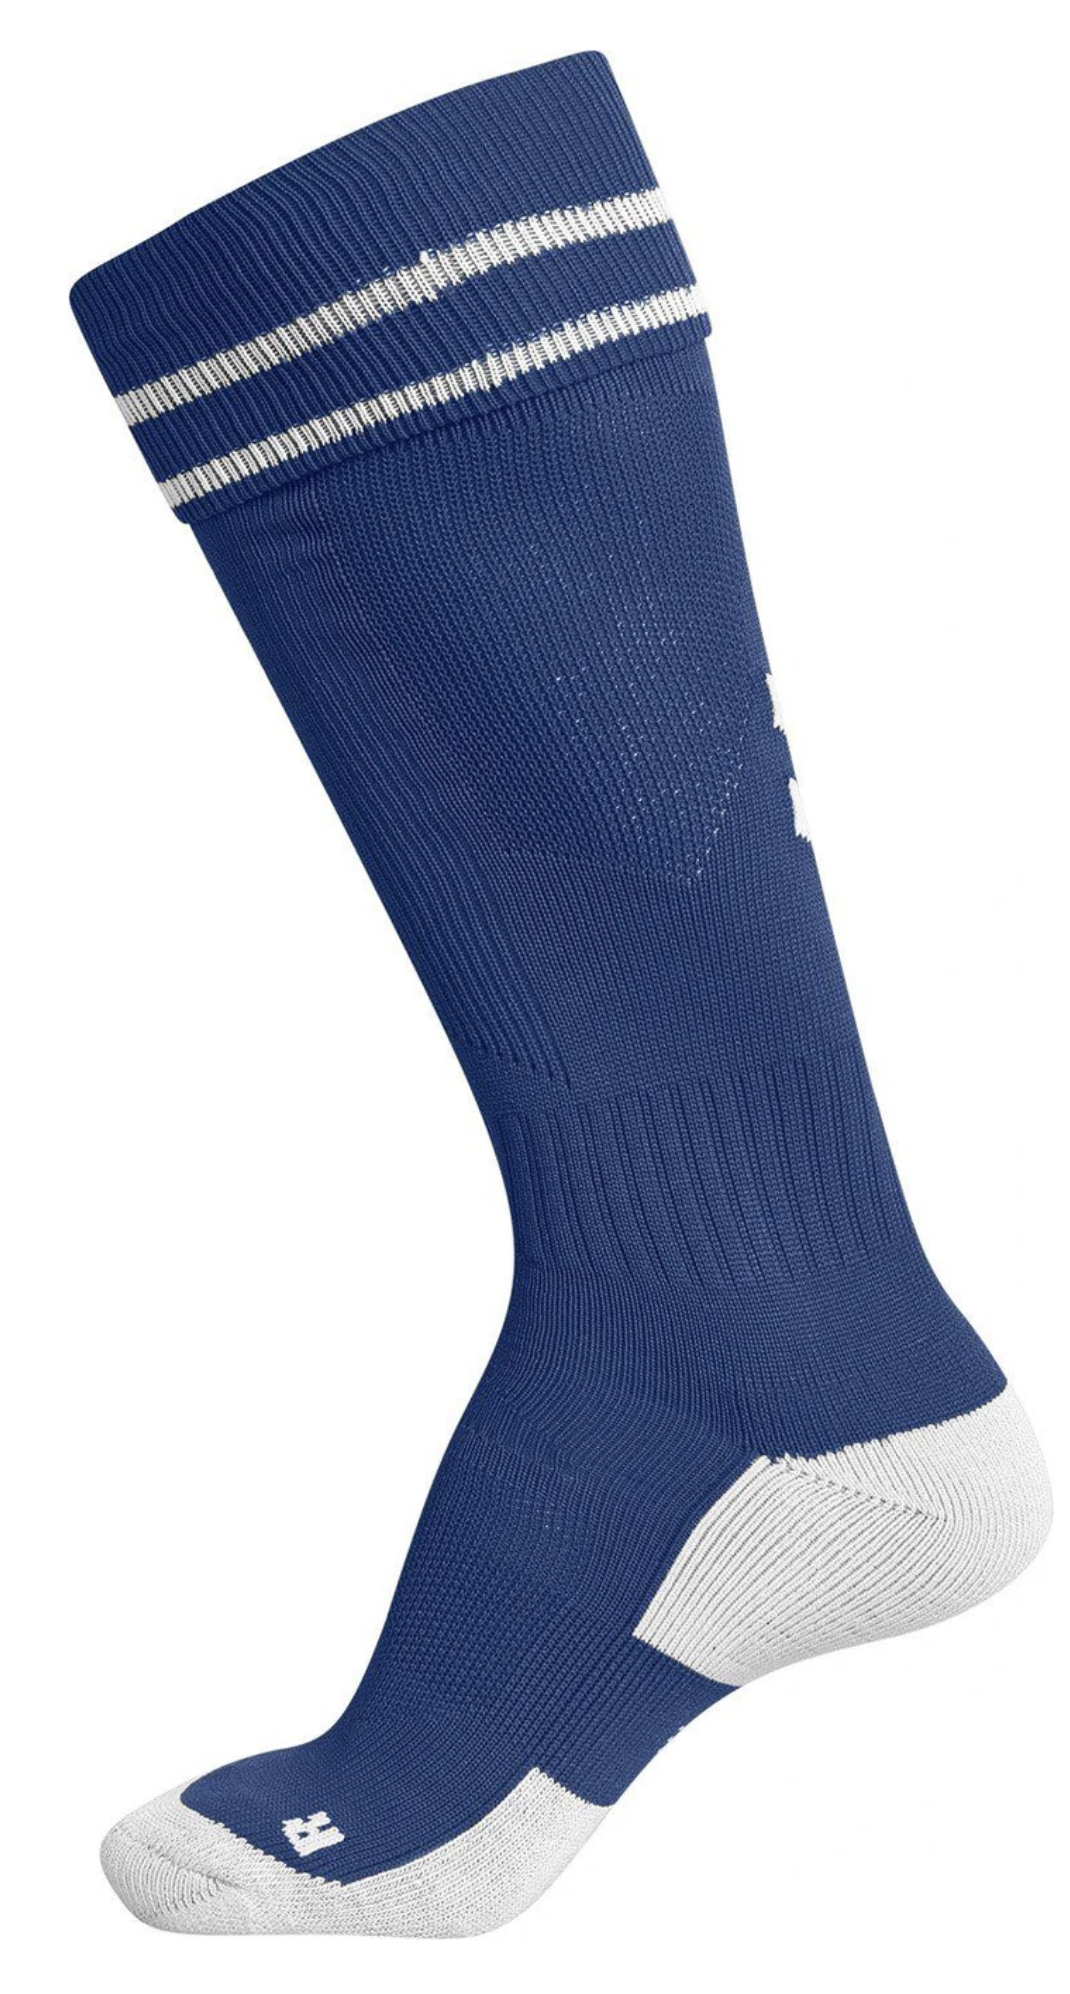 Hummel Element Soccer Socks-Royal/White